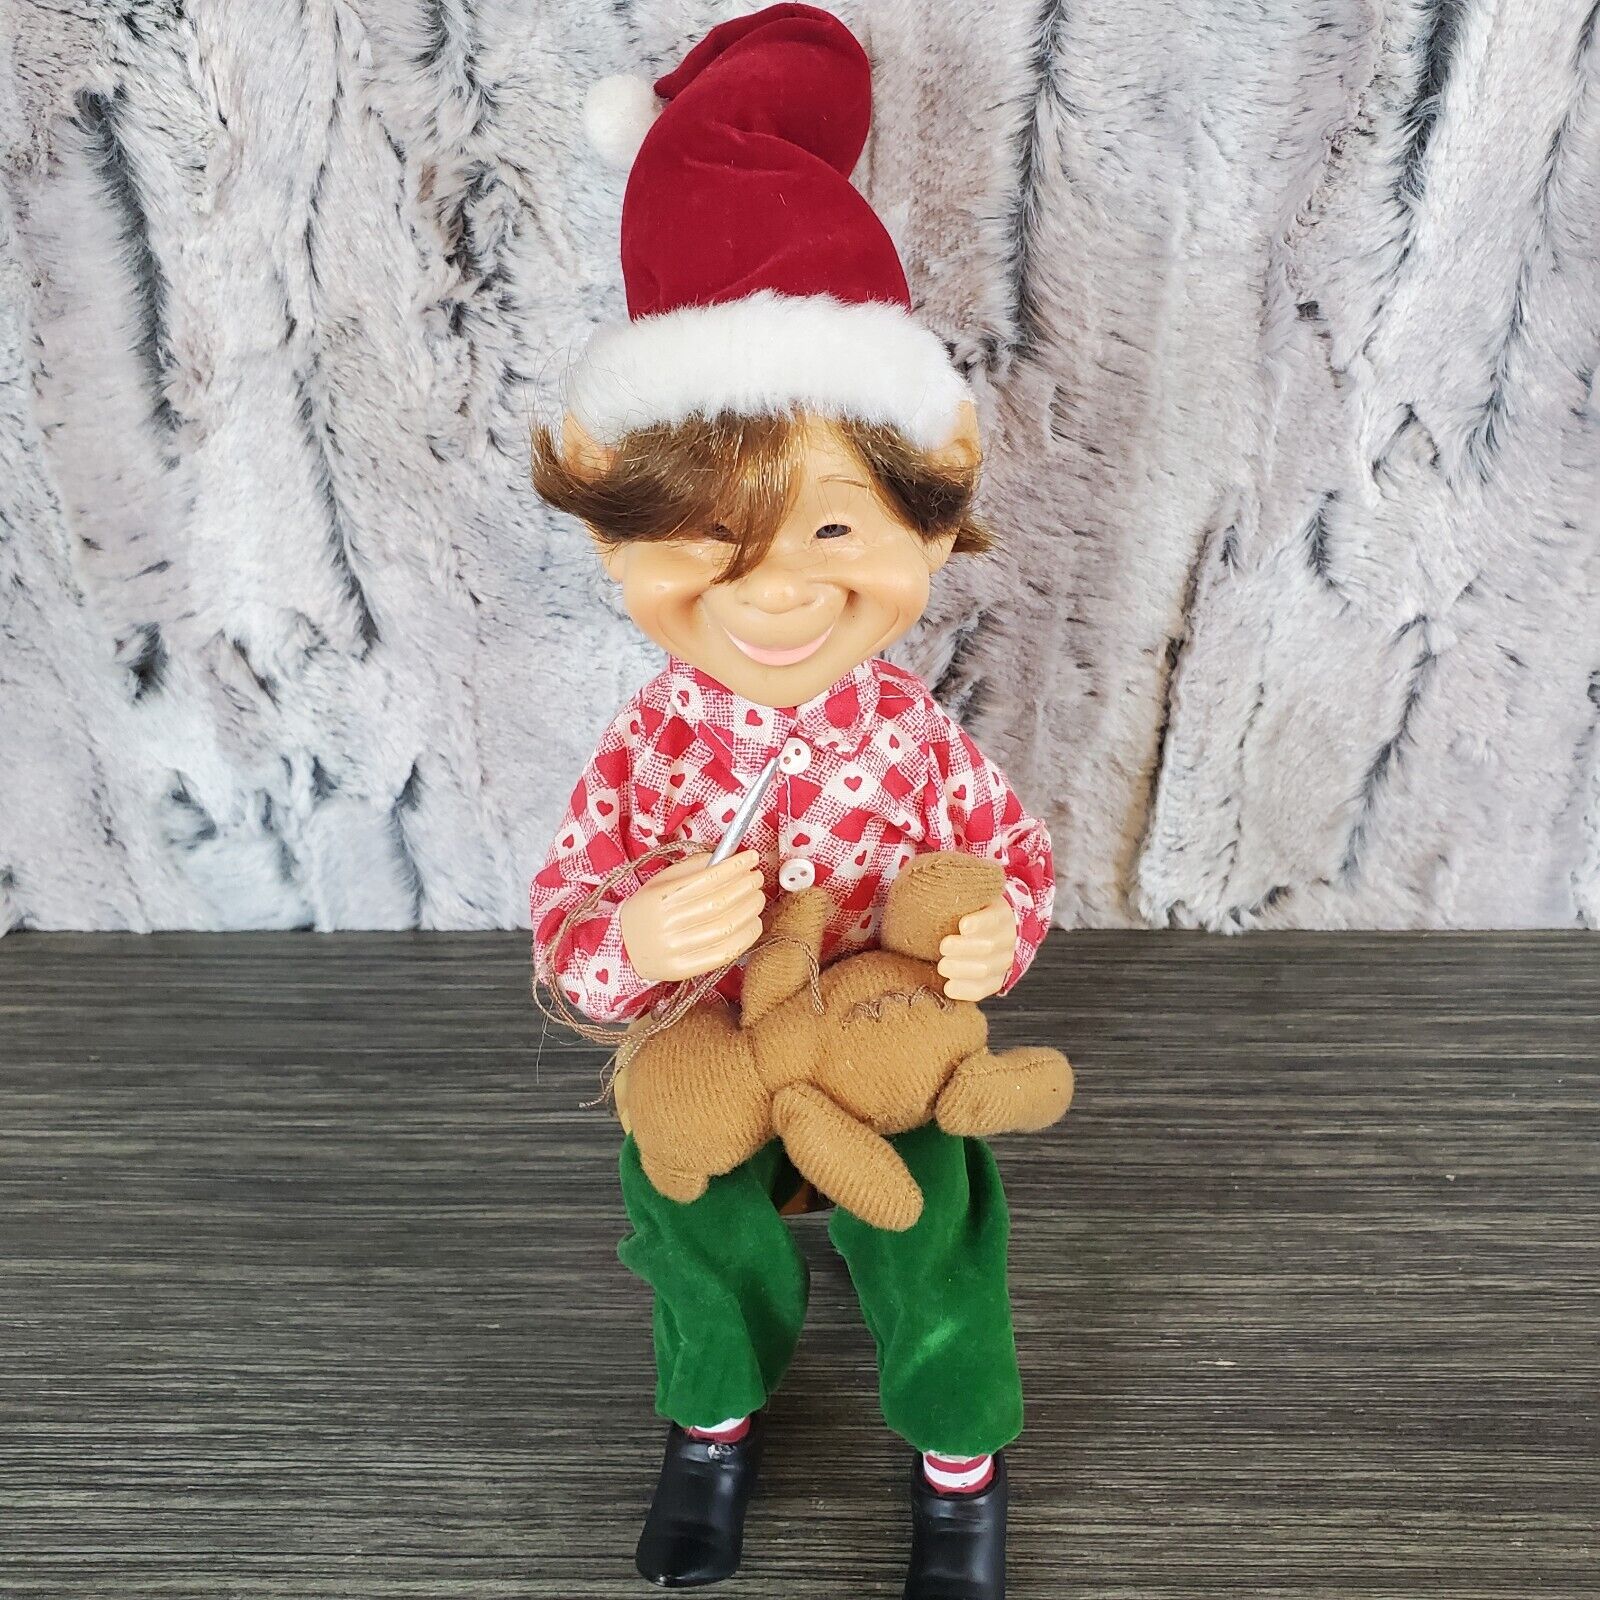 Christmas Elf Doll Figurine - Toymaker Sitting Santa's Workshop Helper READ SEE